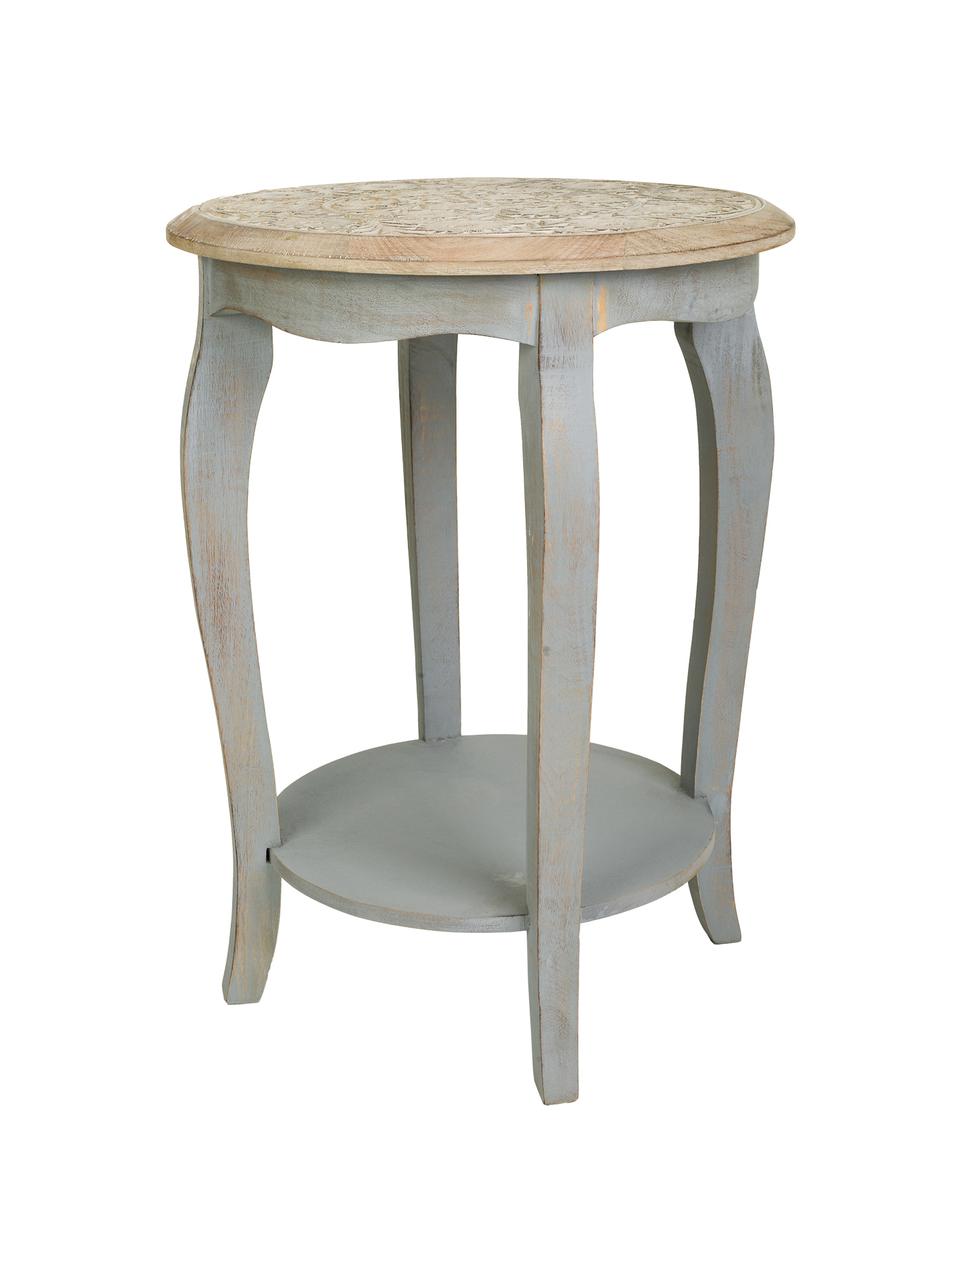 Kulatý odkládací stolek z mangového dřeva s vyřezávaným vzorem květin Kreon, Mangové dřevo, Světle hnědá, šedá, Ø 45 cm, V 60 cm